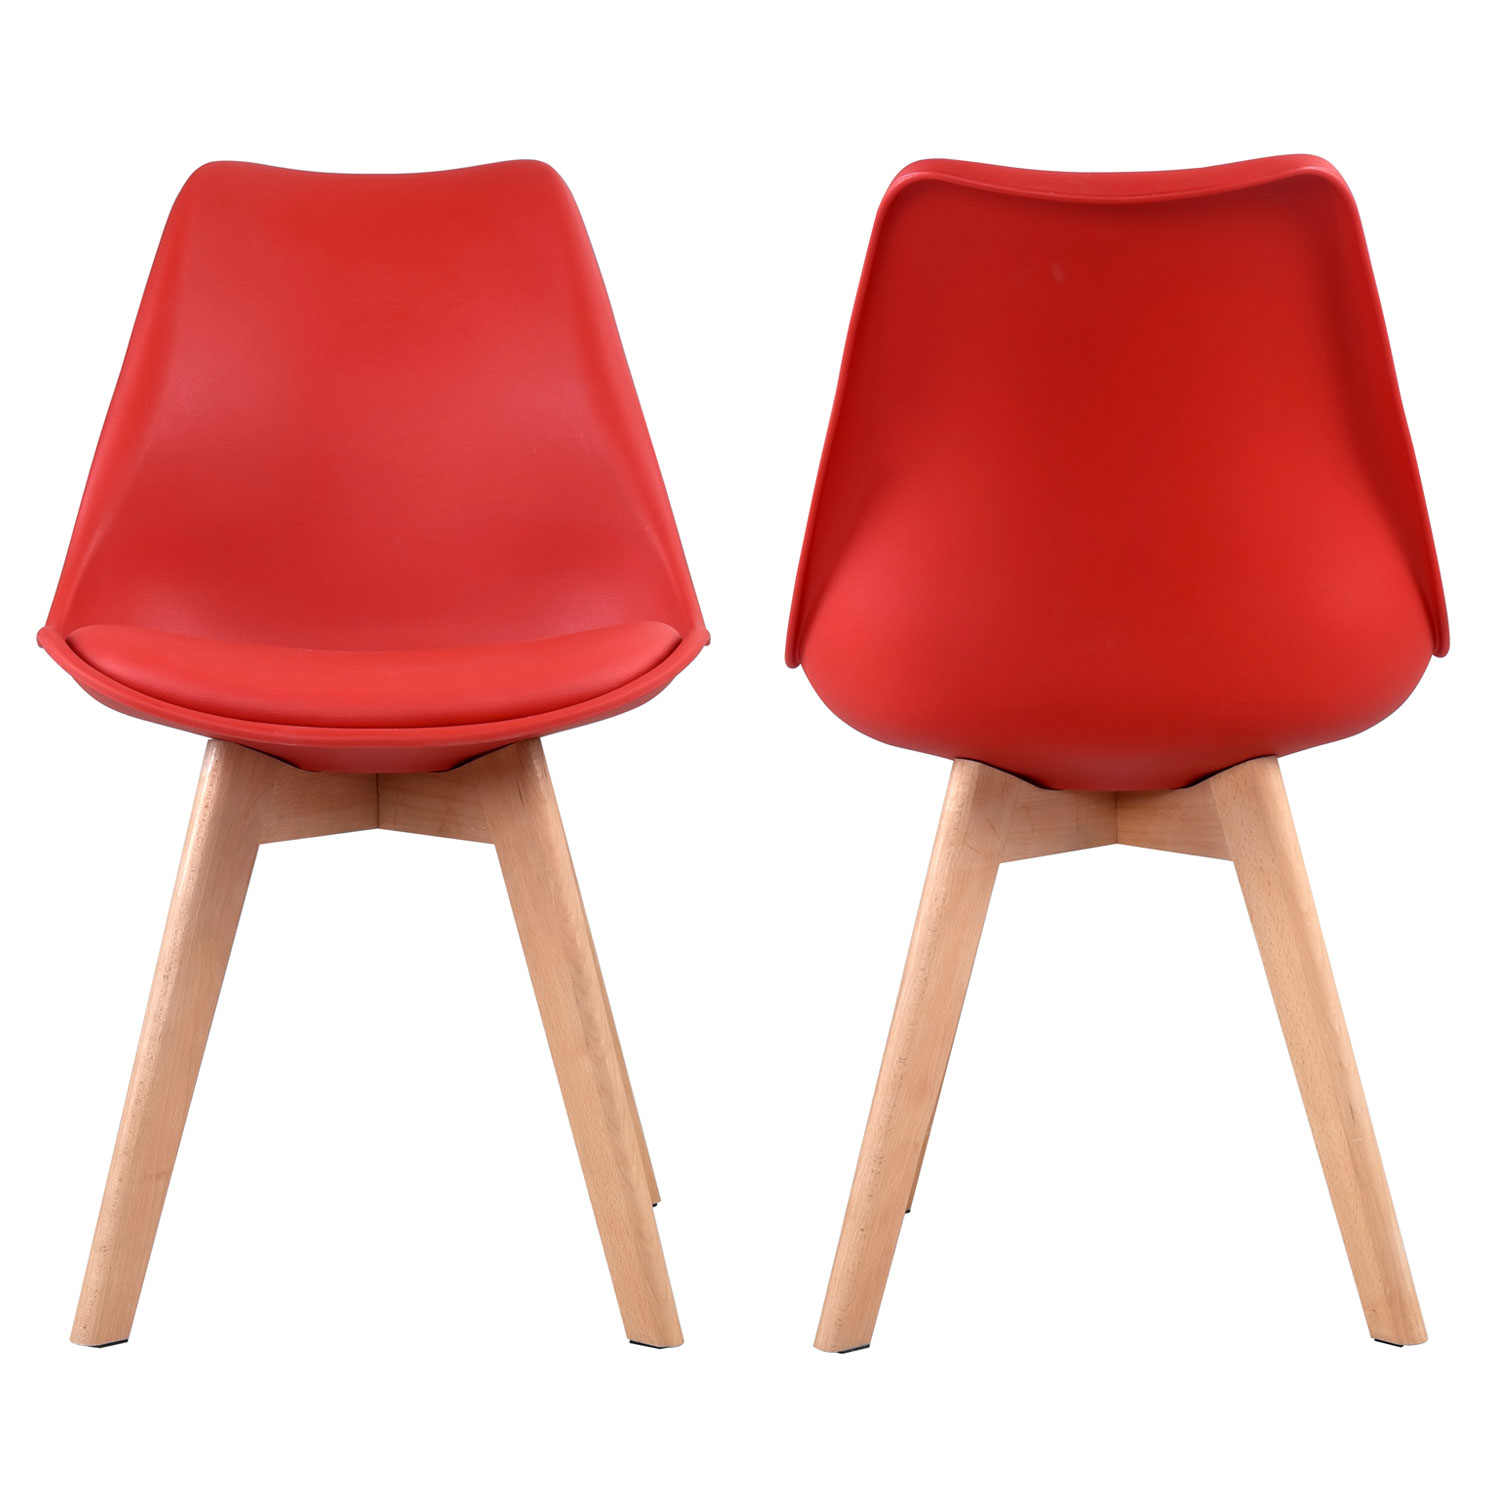 Lote de 2 sillas escandinavas NORA color rojo con cojín